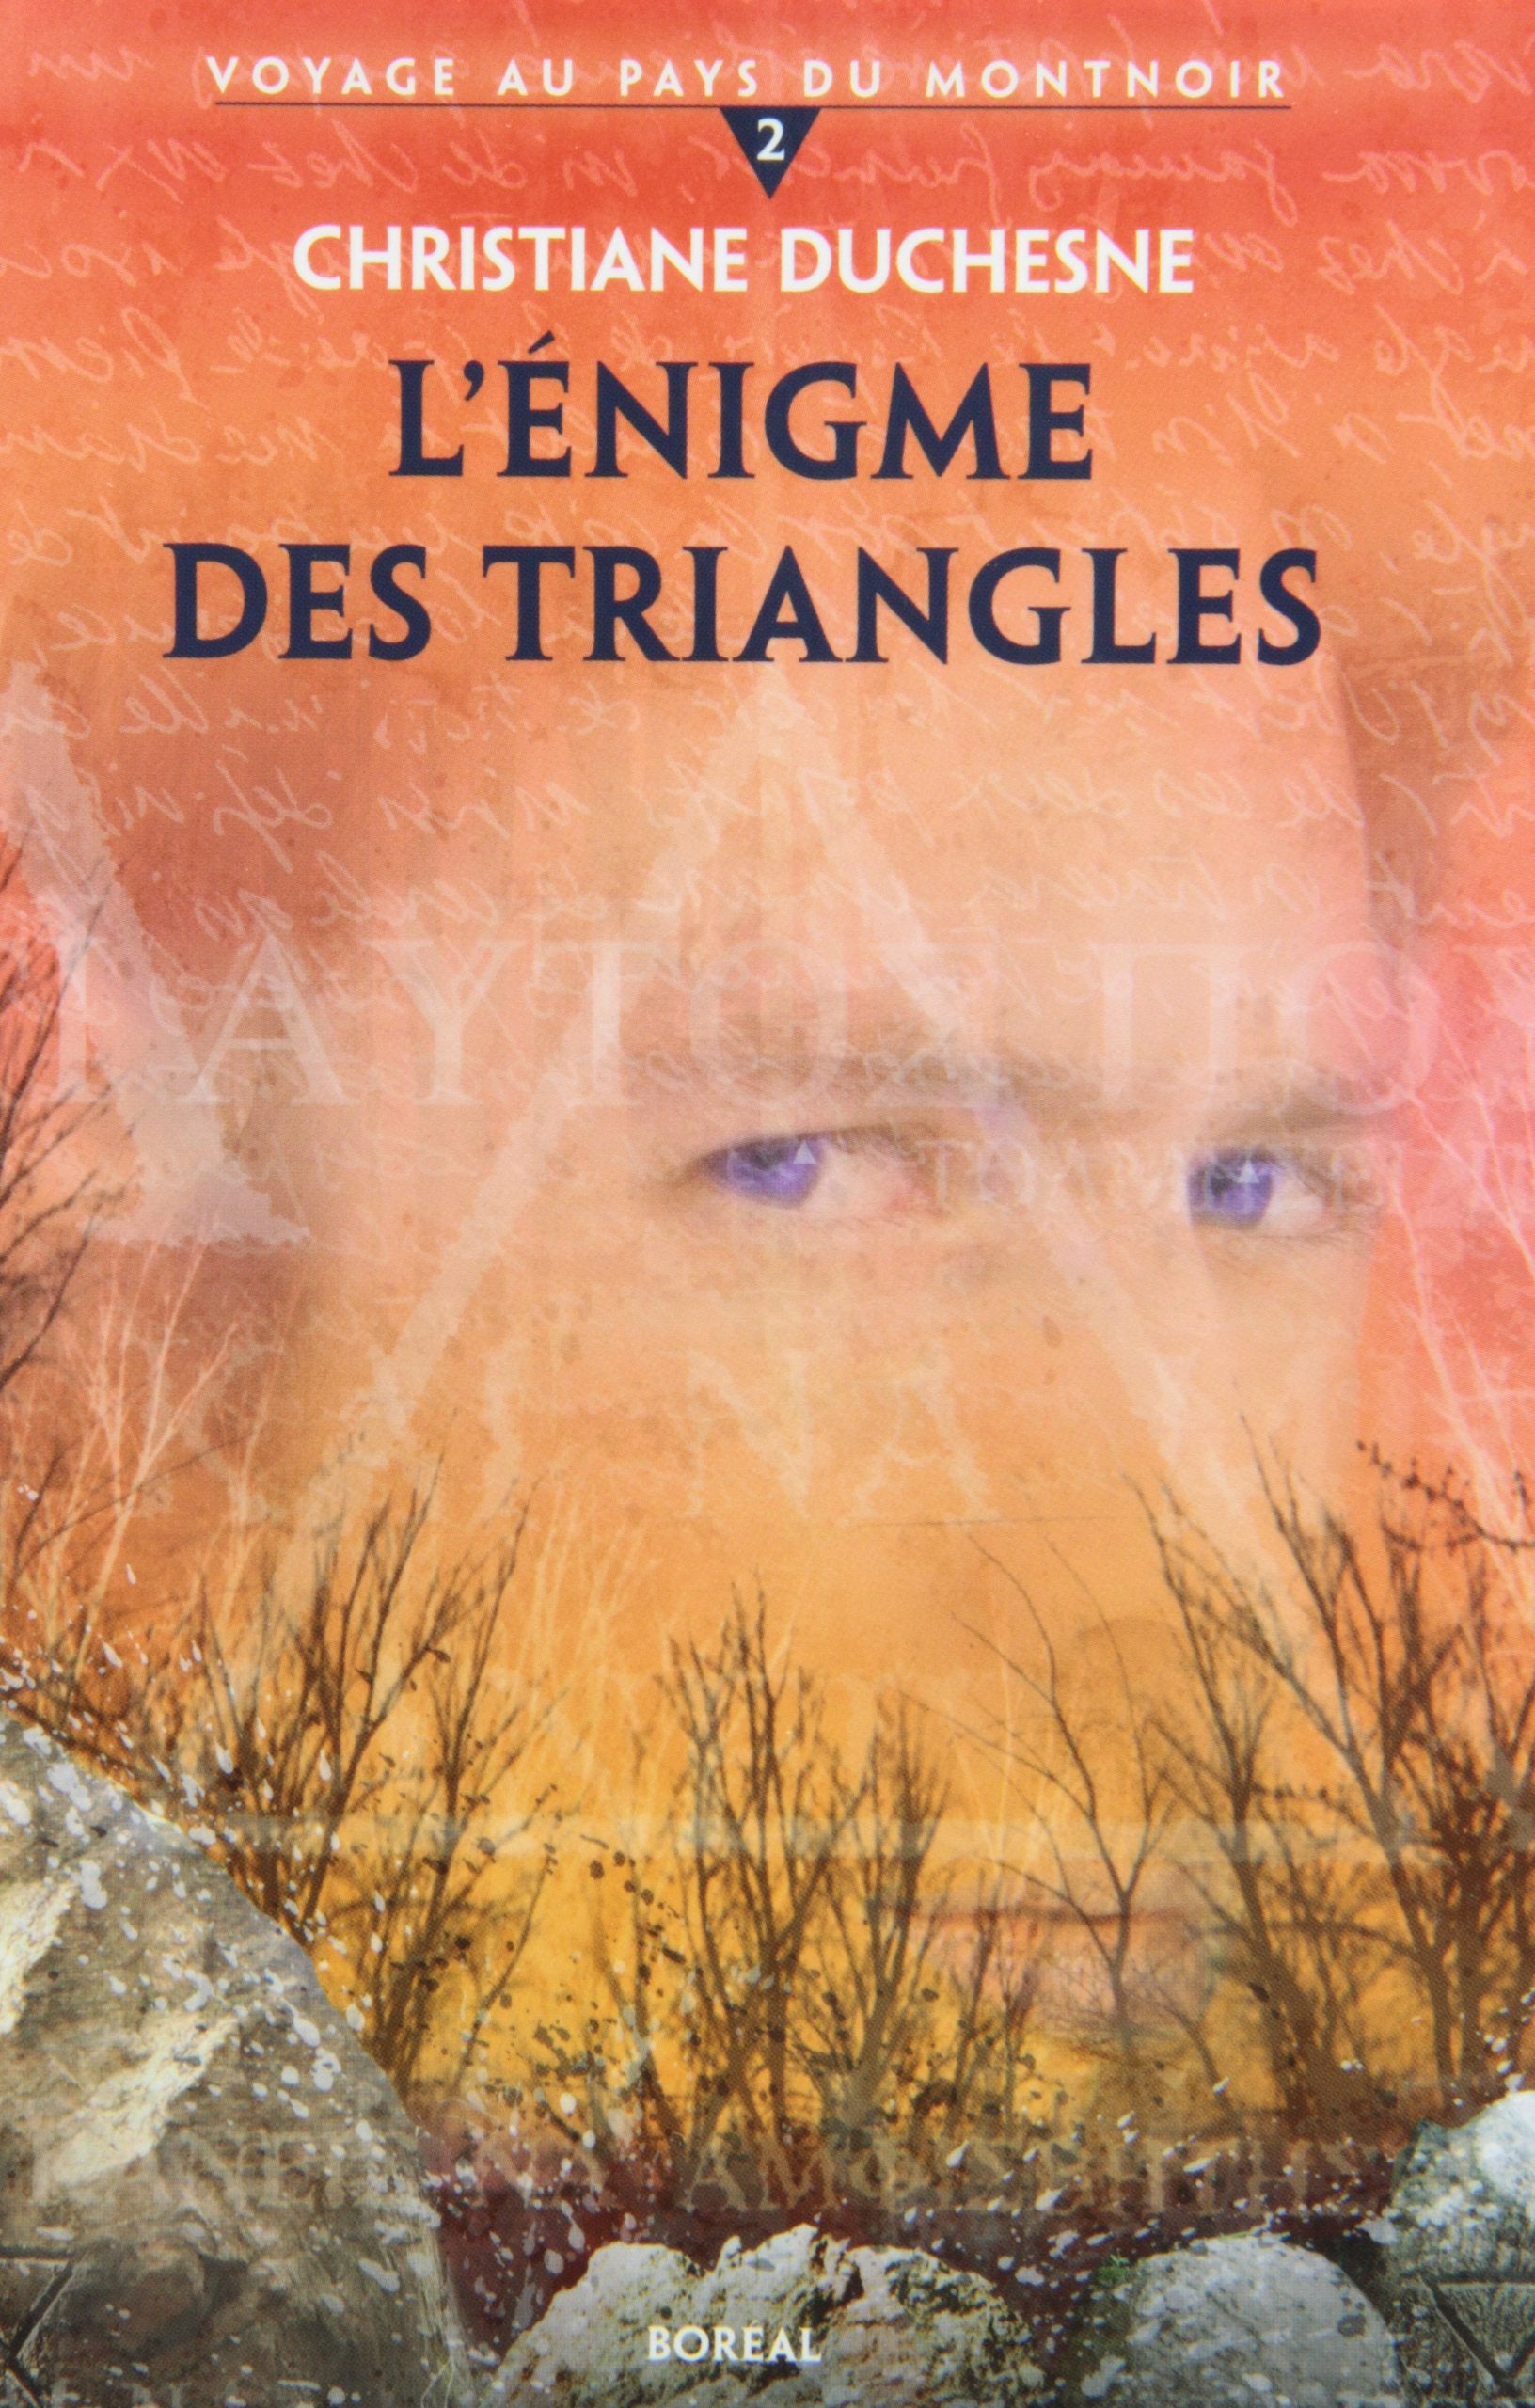 Livre ISBN 2764605463 Voyage au pays du montnoir # 2 : L'énigme des triangles (Christiane Duchesne)